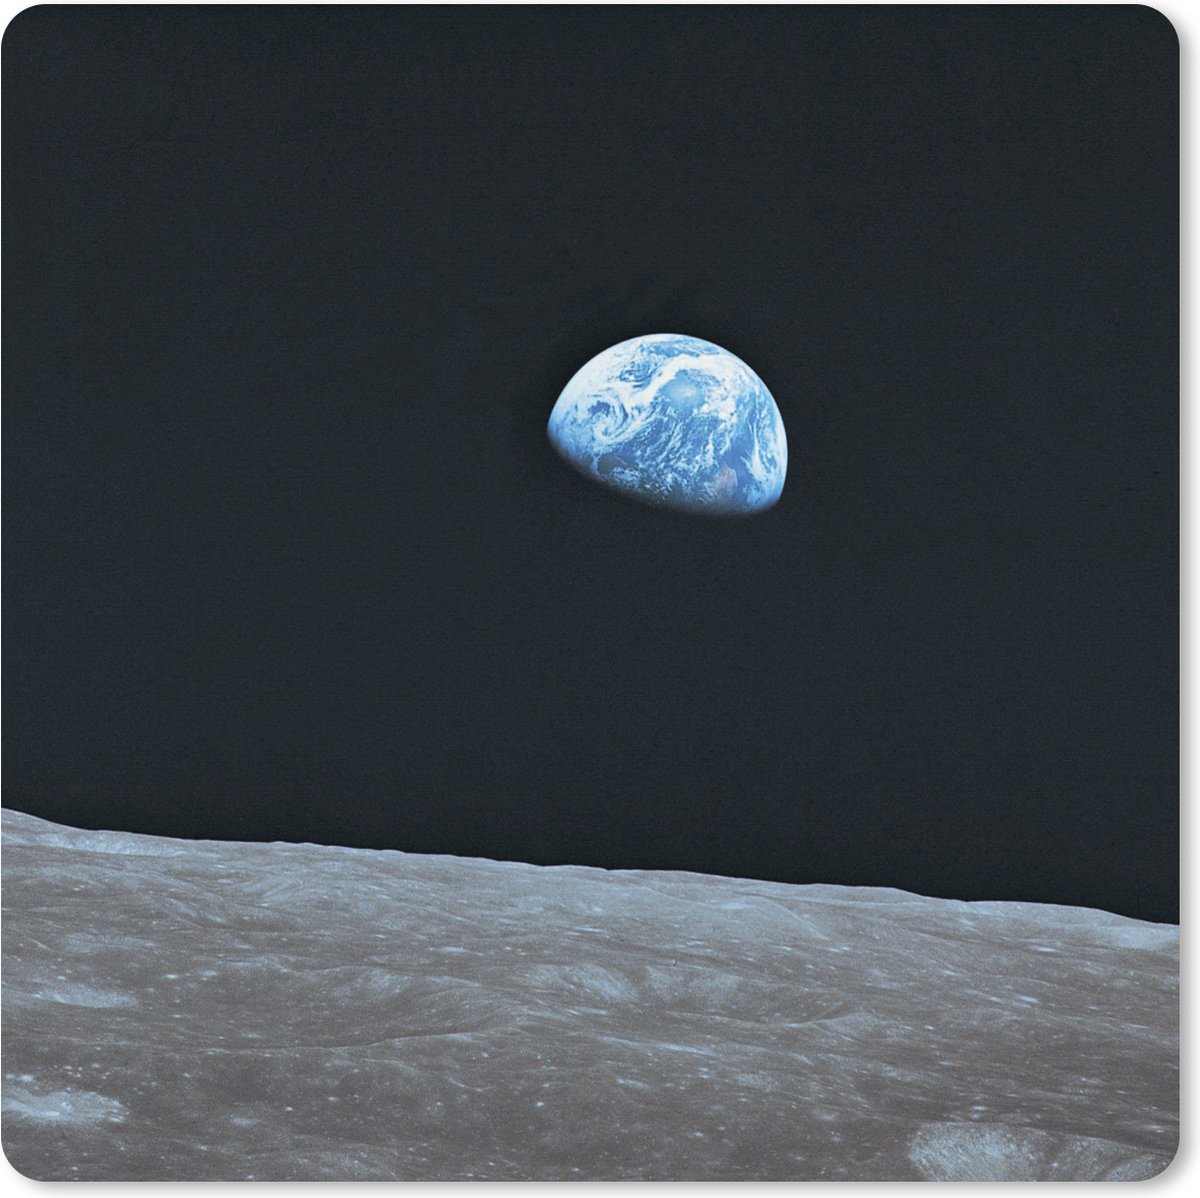 Muismat XXL - Bureau onderlegger - Bureau mat - De aarde vanaf de maan - 60x60 cm - XXL muismat